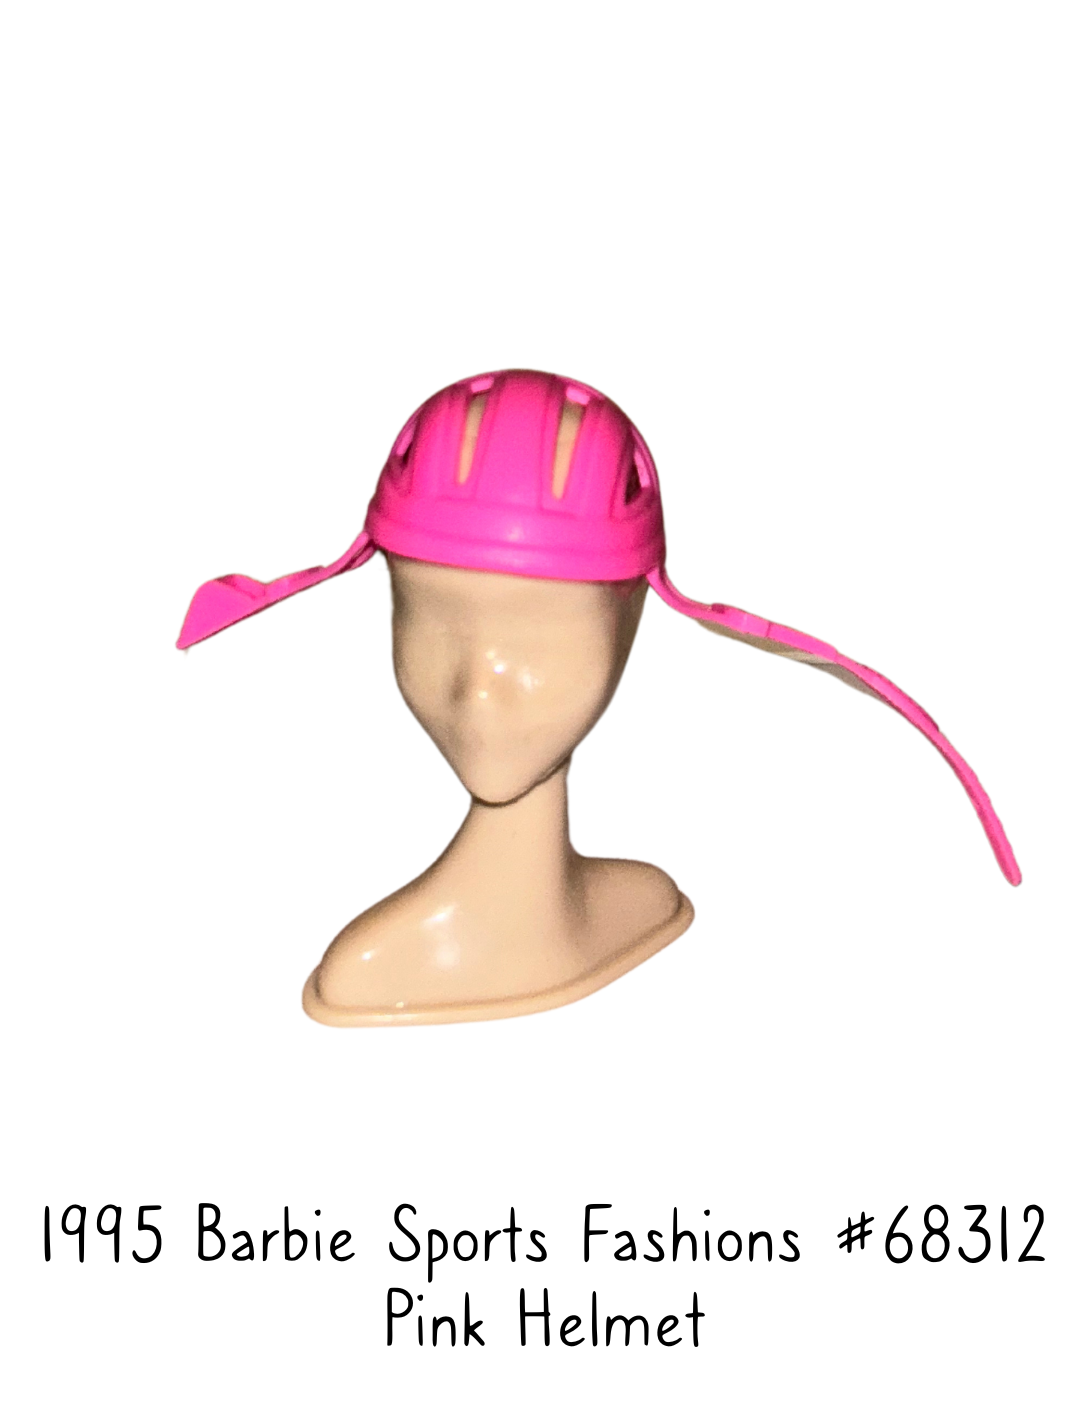 1995 Barbie Sports Fashions Cycle Helmet #68312